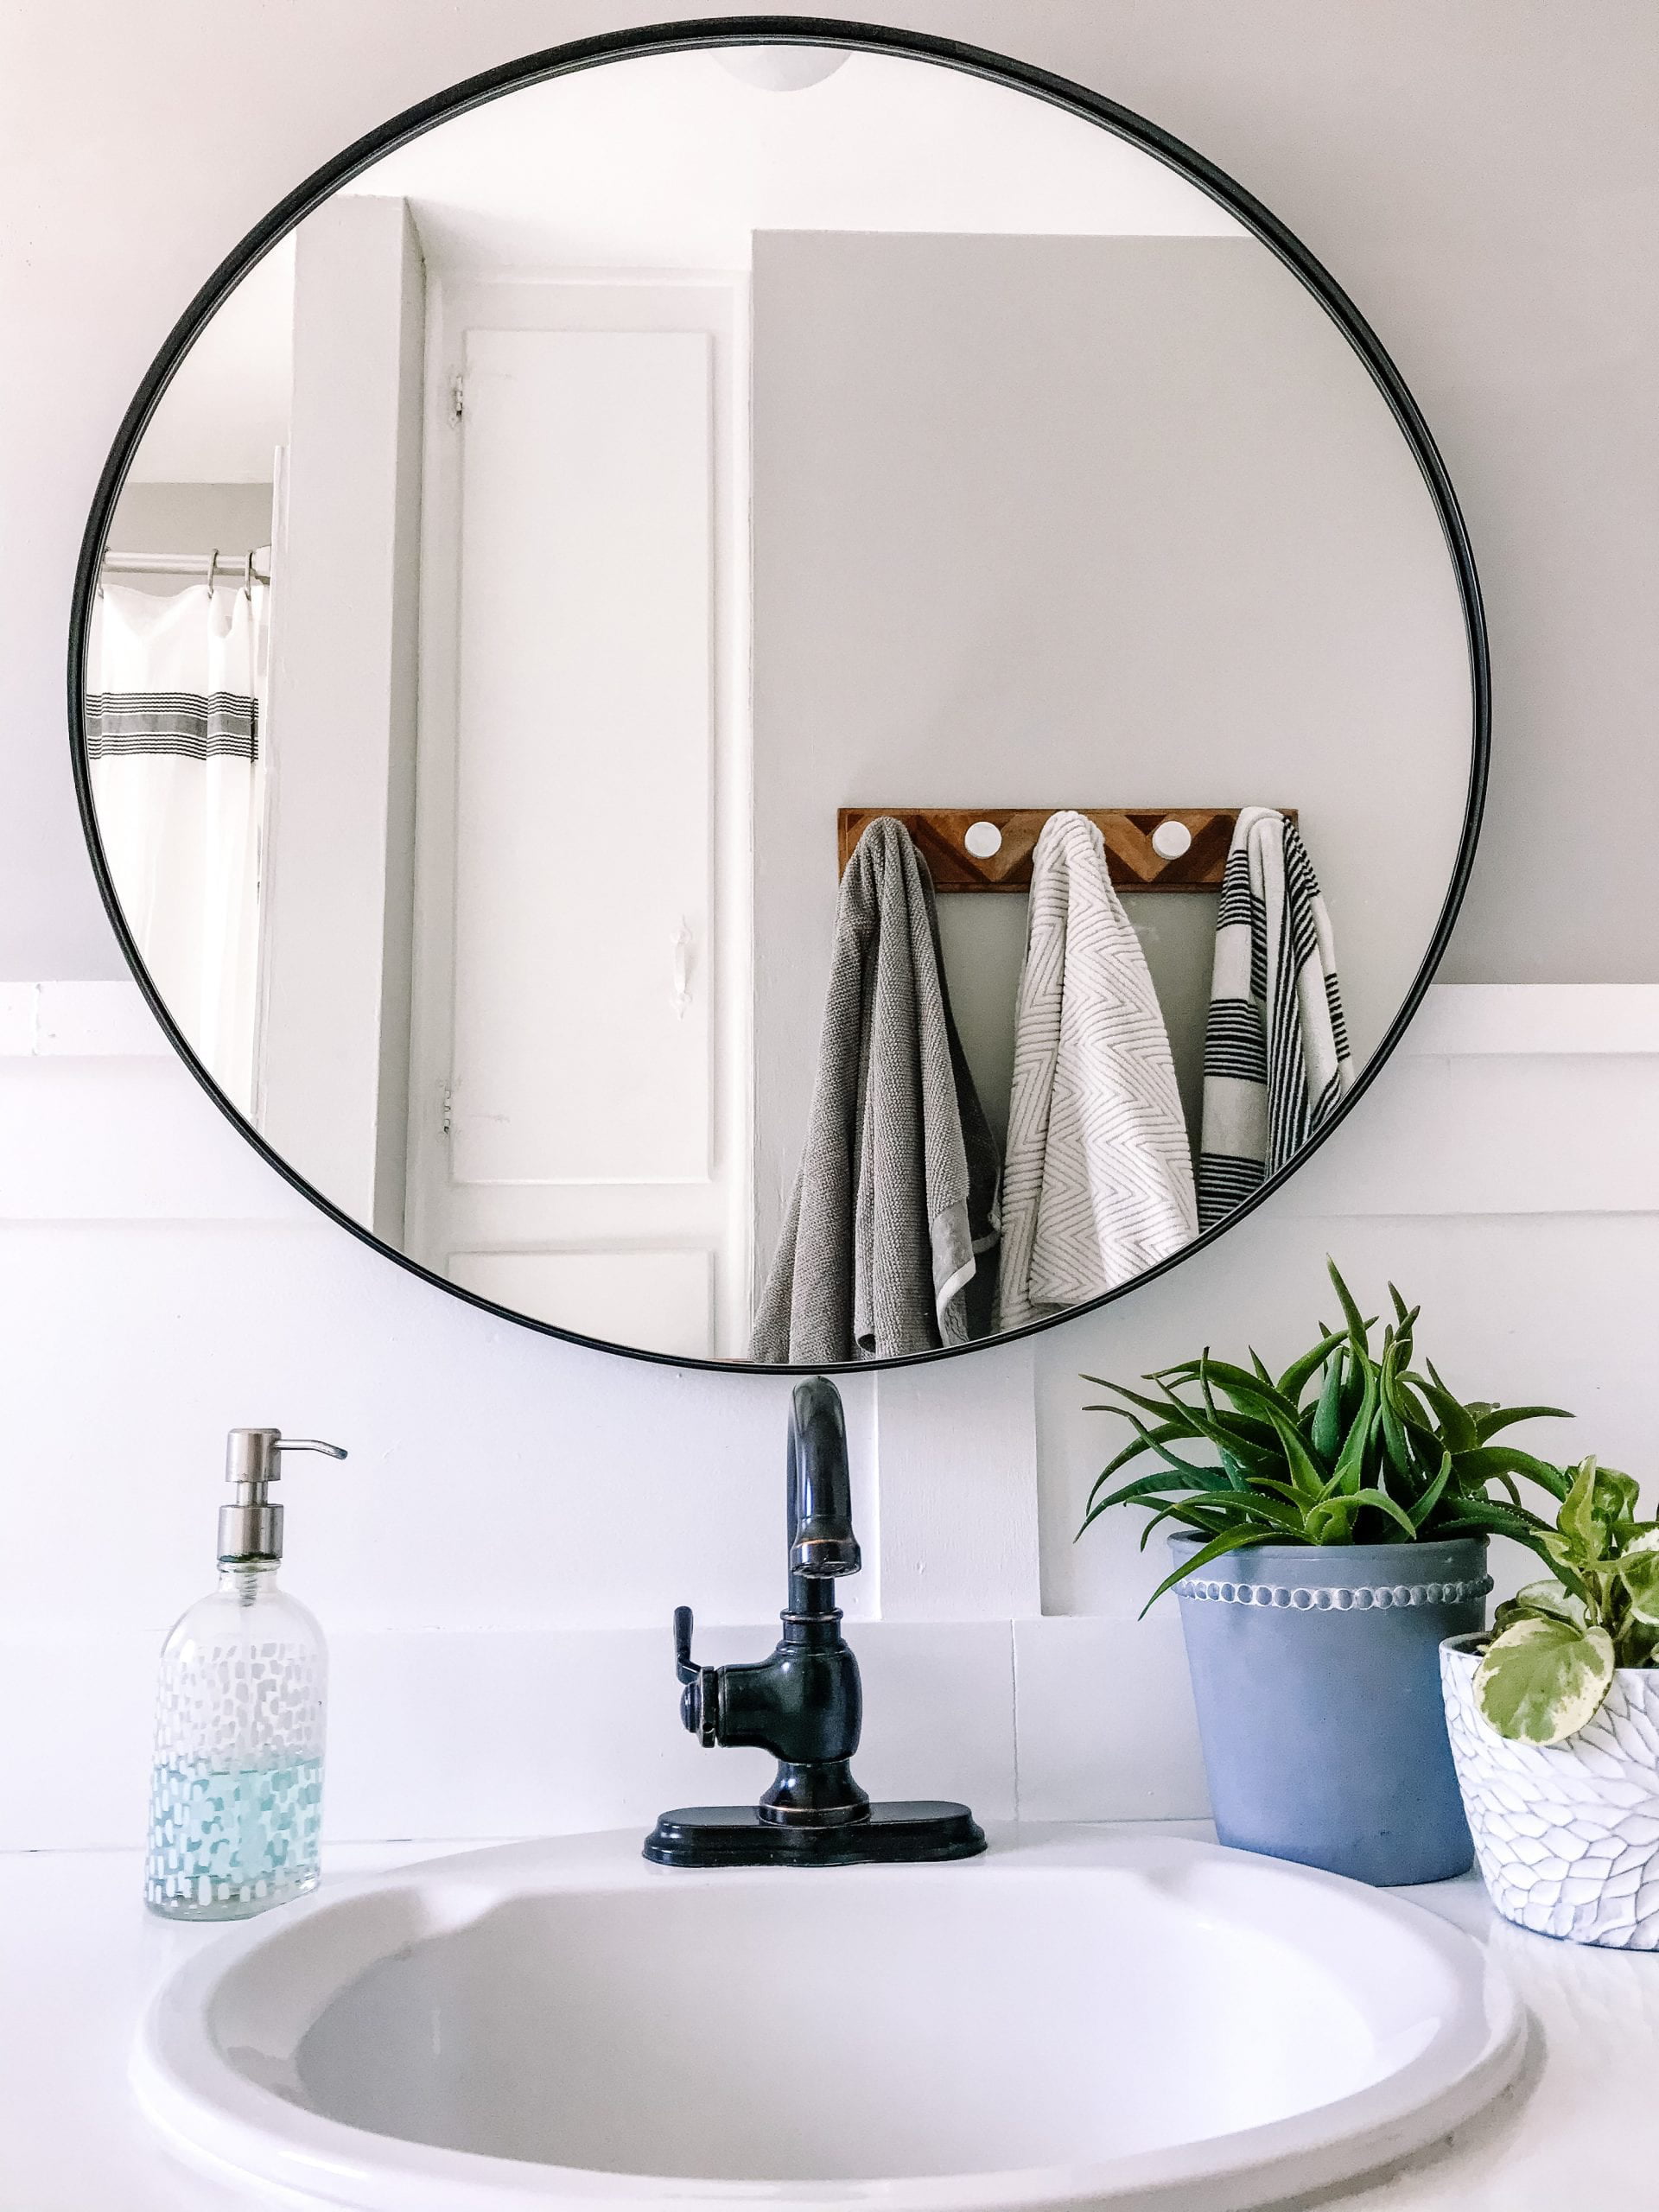 Black Frame Round Bathroom Mirror Off, Round Black Framed Bathroom Mirrors